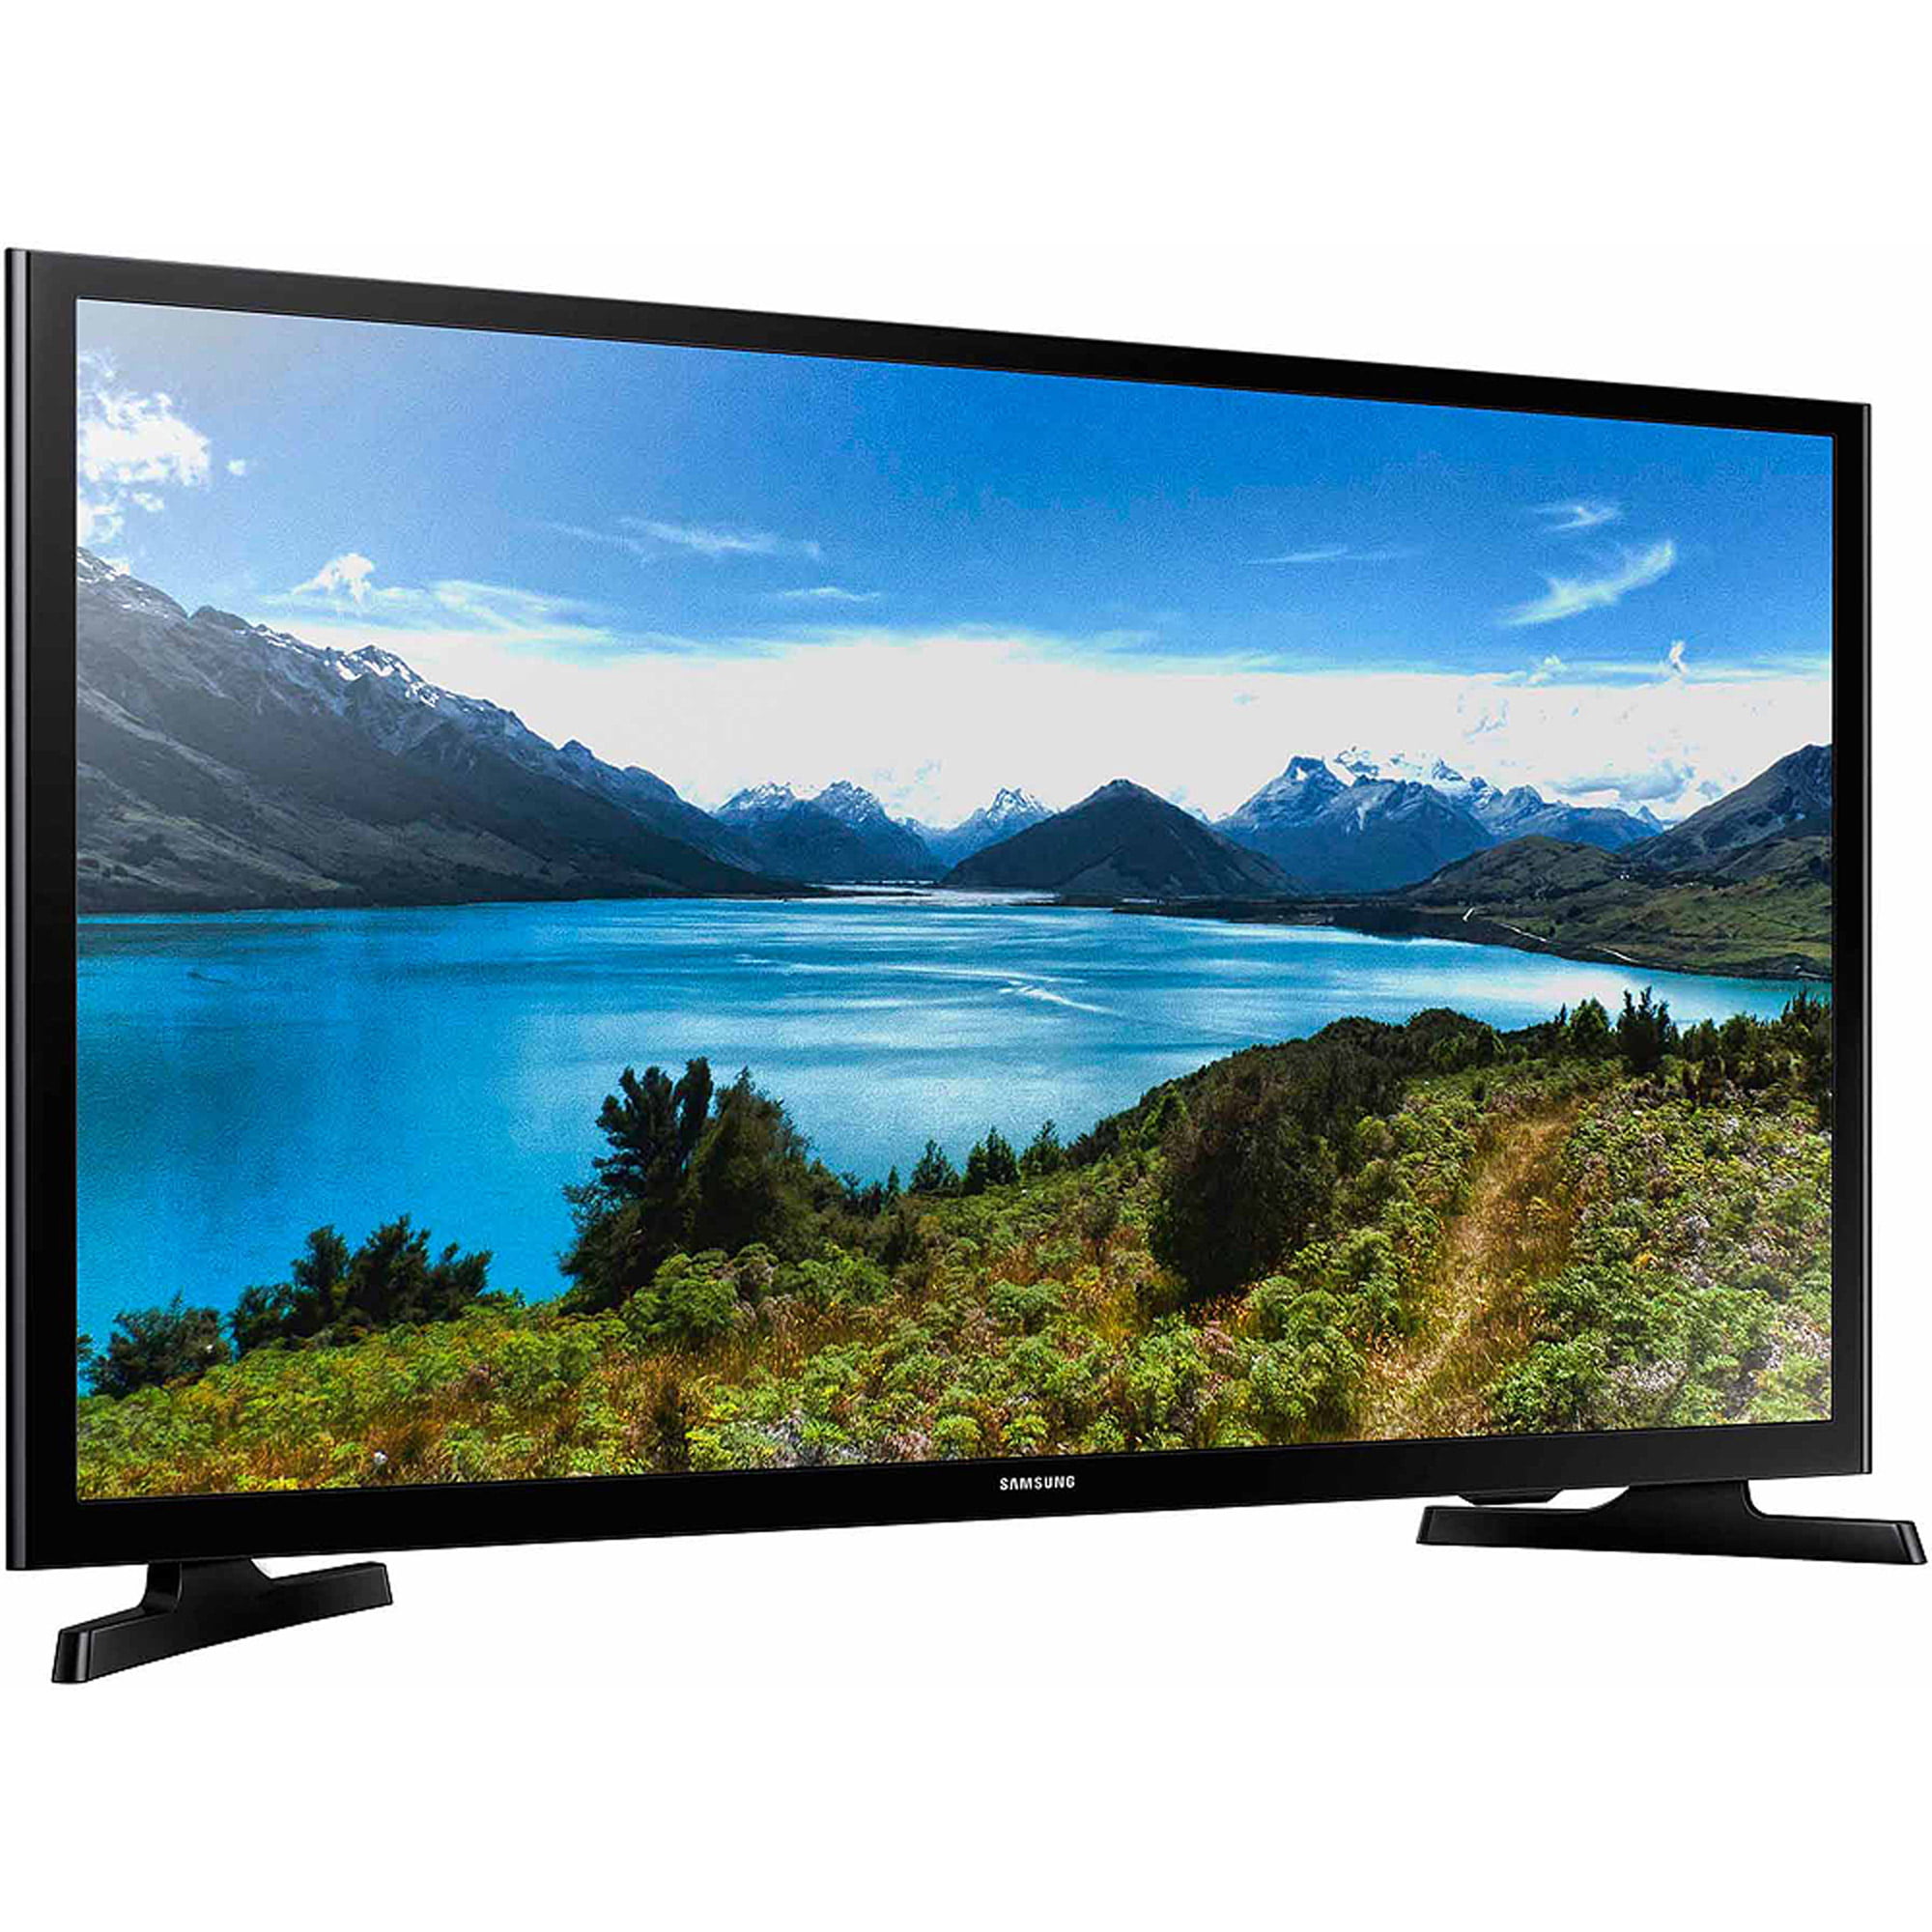 Купить телевизор самсунг смарт тв в москве. Samsung ue32j4710. Samsung ue32j5200ak. Телевизор самсунг 32 дюйма. Samsung ue32t5300.